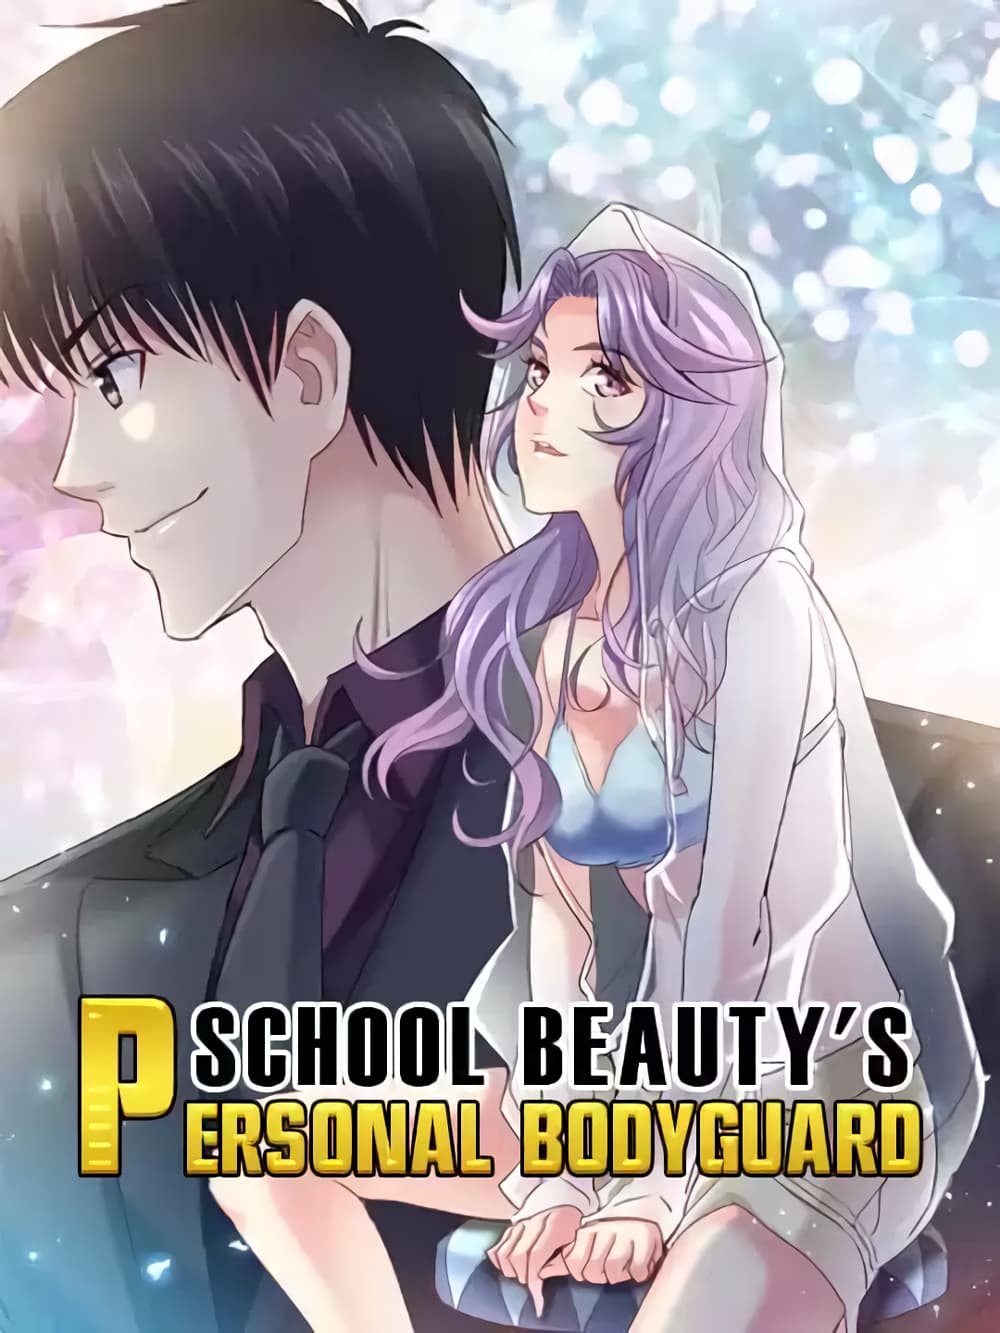 School Beauty's Bodyguard 290 (1)